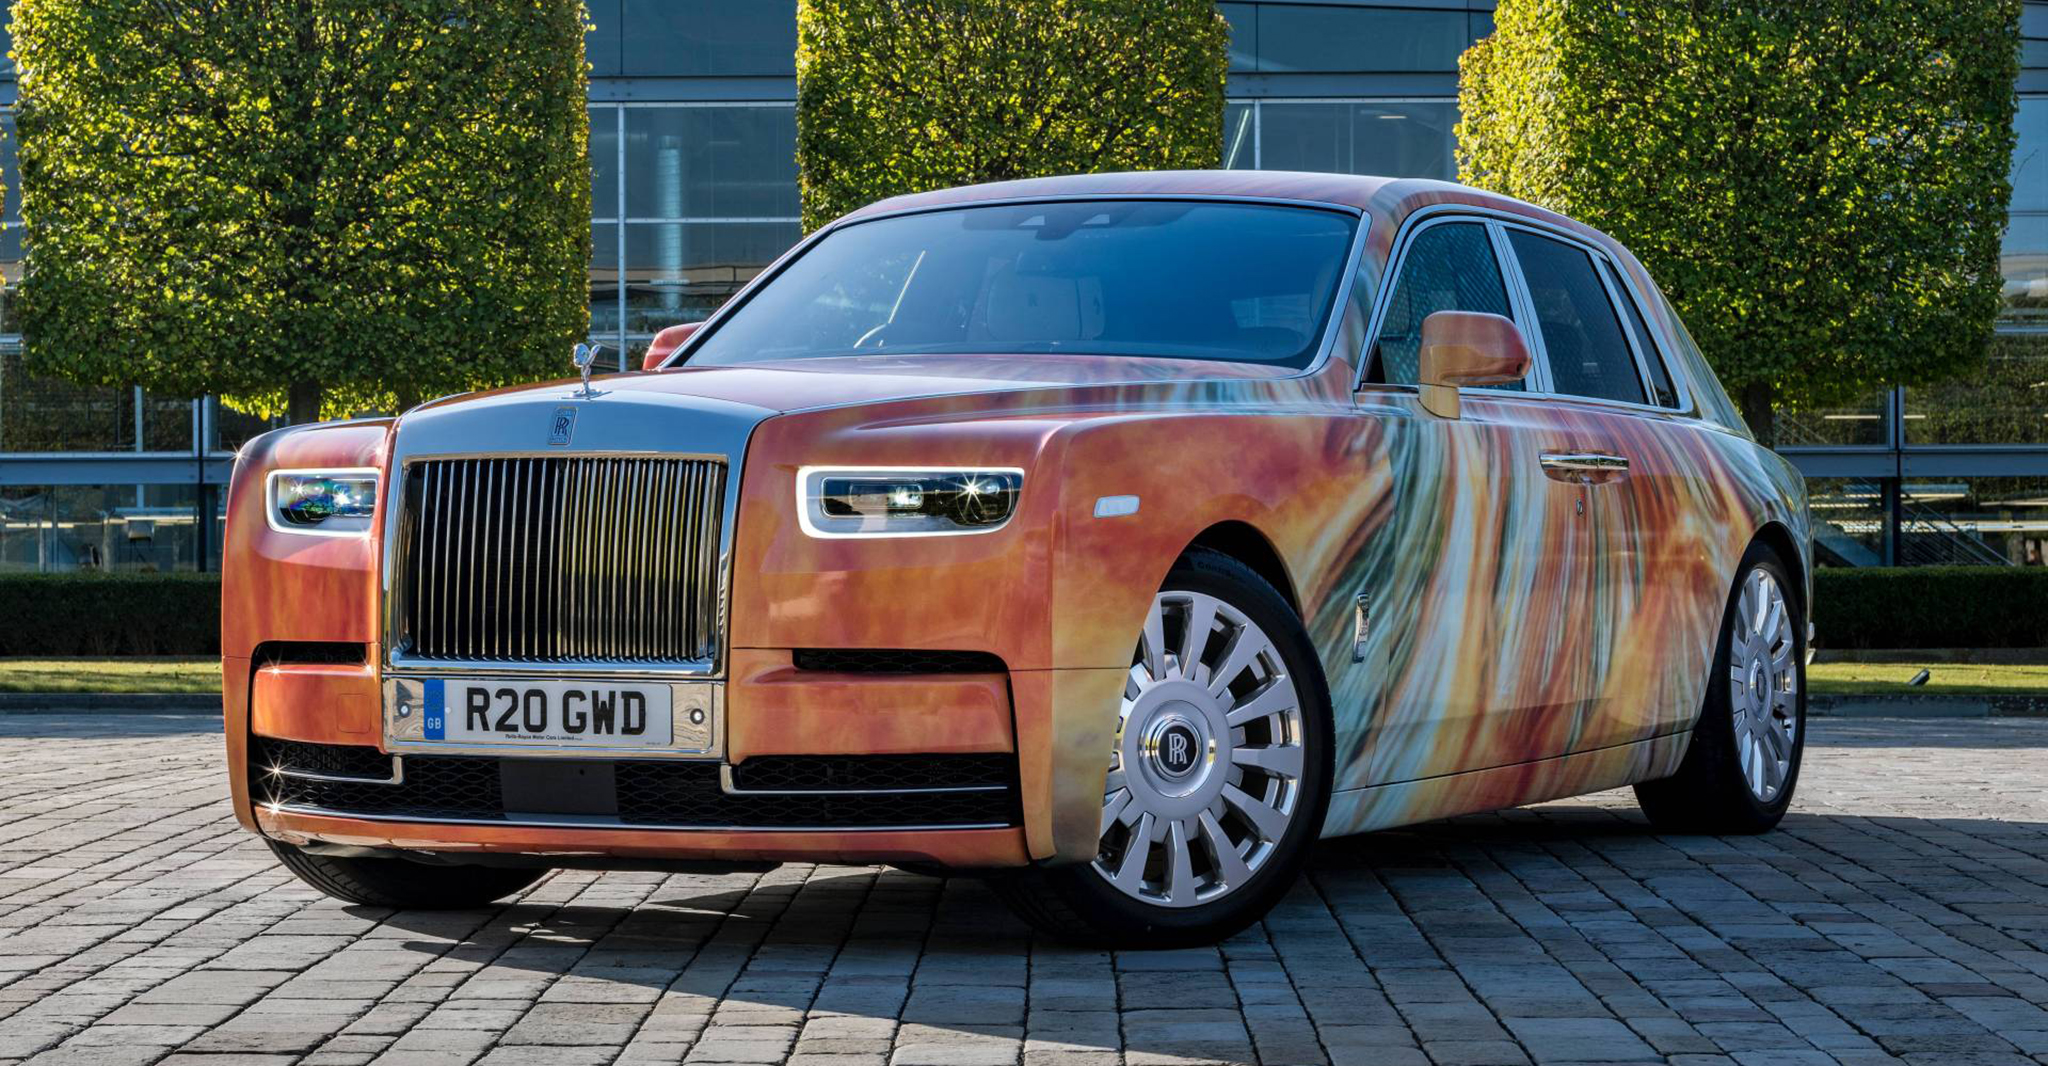 Rolls-Royce Phantom VIII với ngoại thất đặc biệt giá 1,09 triệu USD